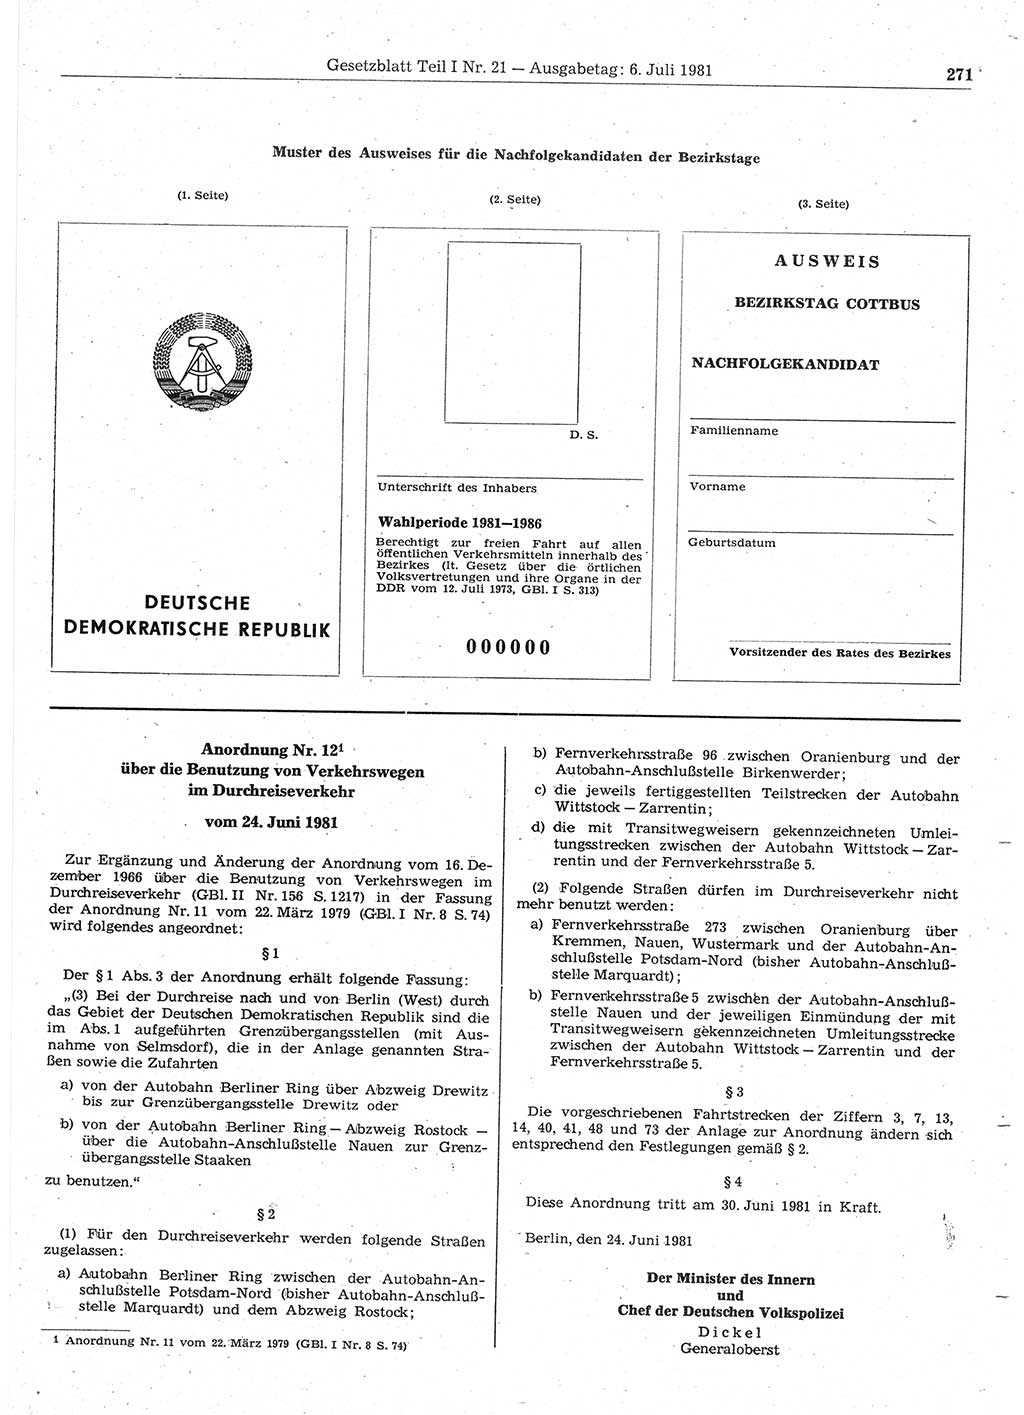 Gesetzblatt (GBl.) der Deutschen Demokratischen Republik (DDR) Teil Ⅰ 1981, Seite 271 (GBl. DDR Ⅰ 1981, S. 271)